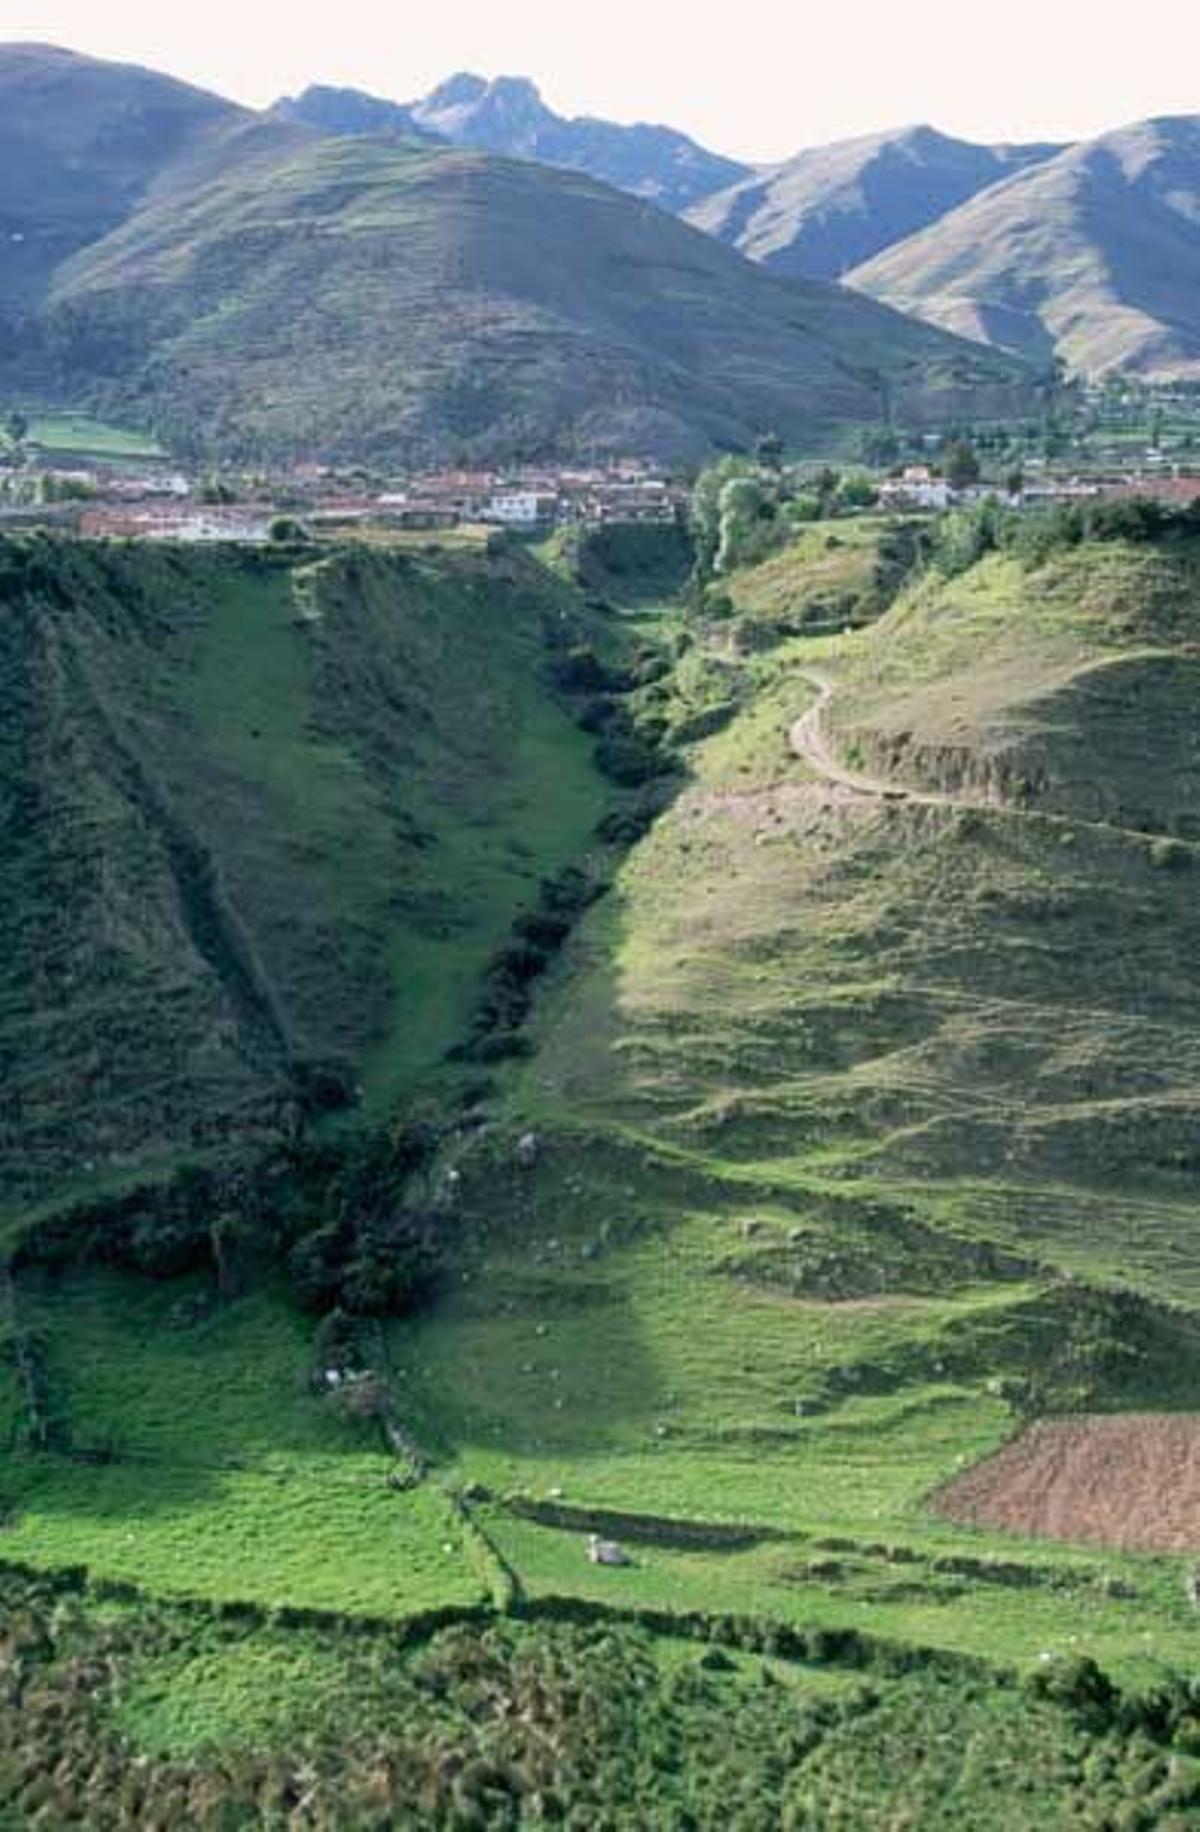 La localidad de Mucuchies se encuentra enclavada en medio de las montañas andinas.